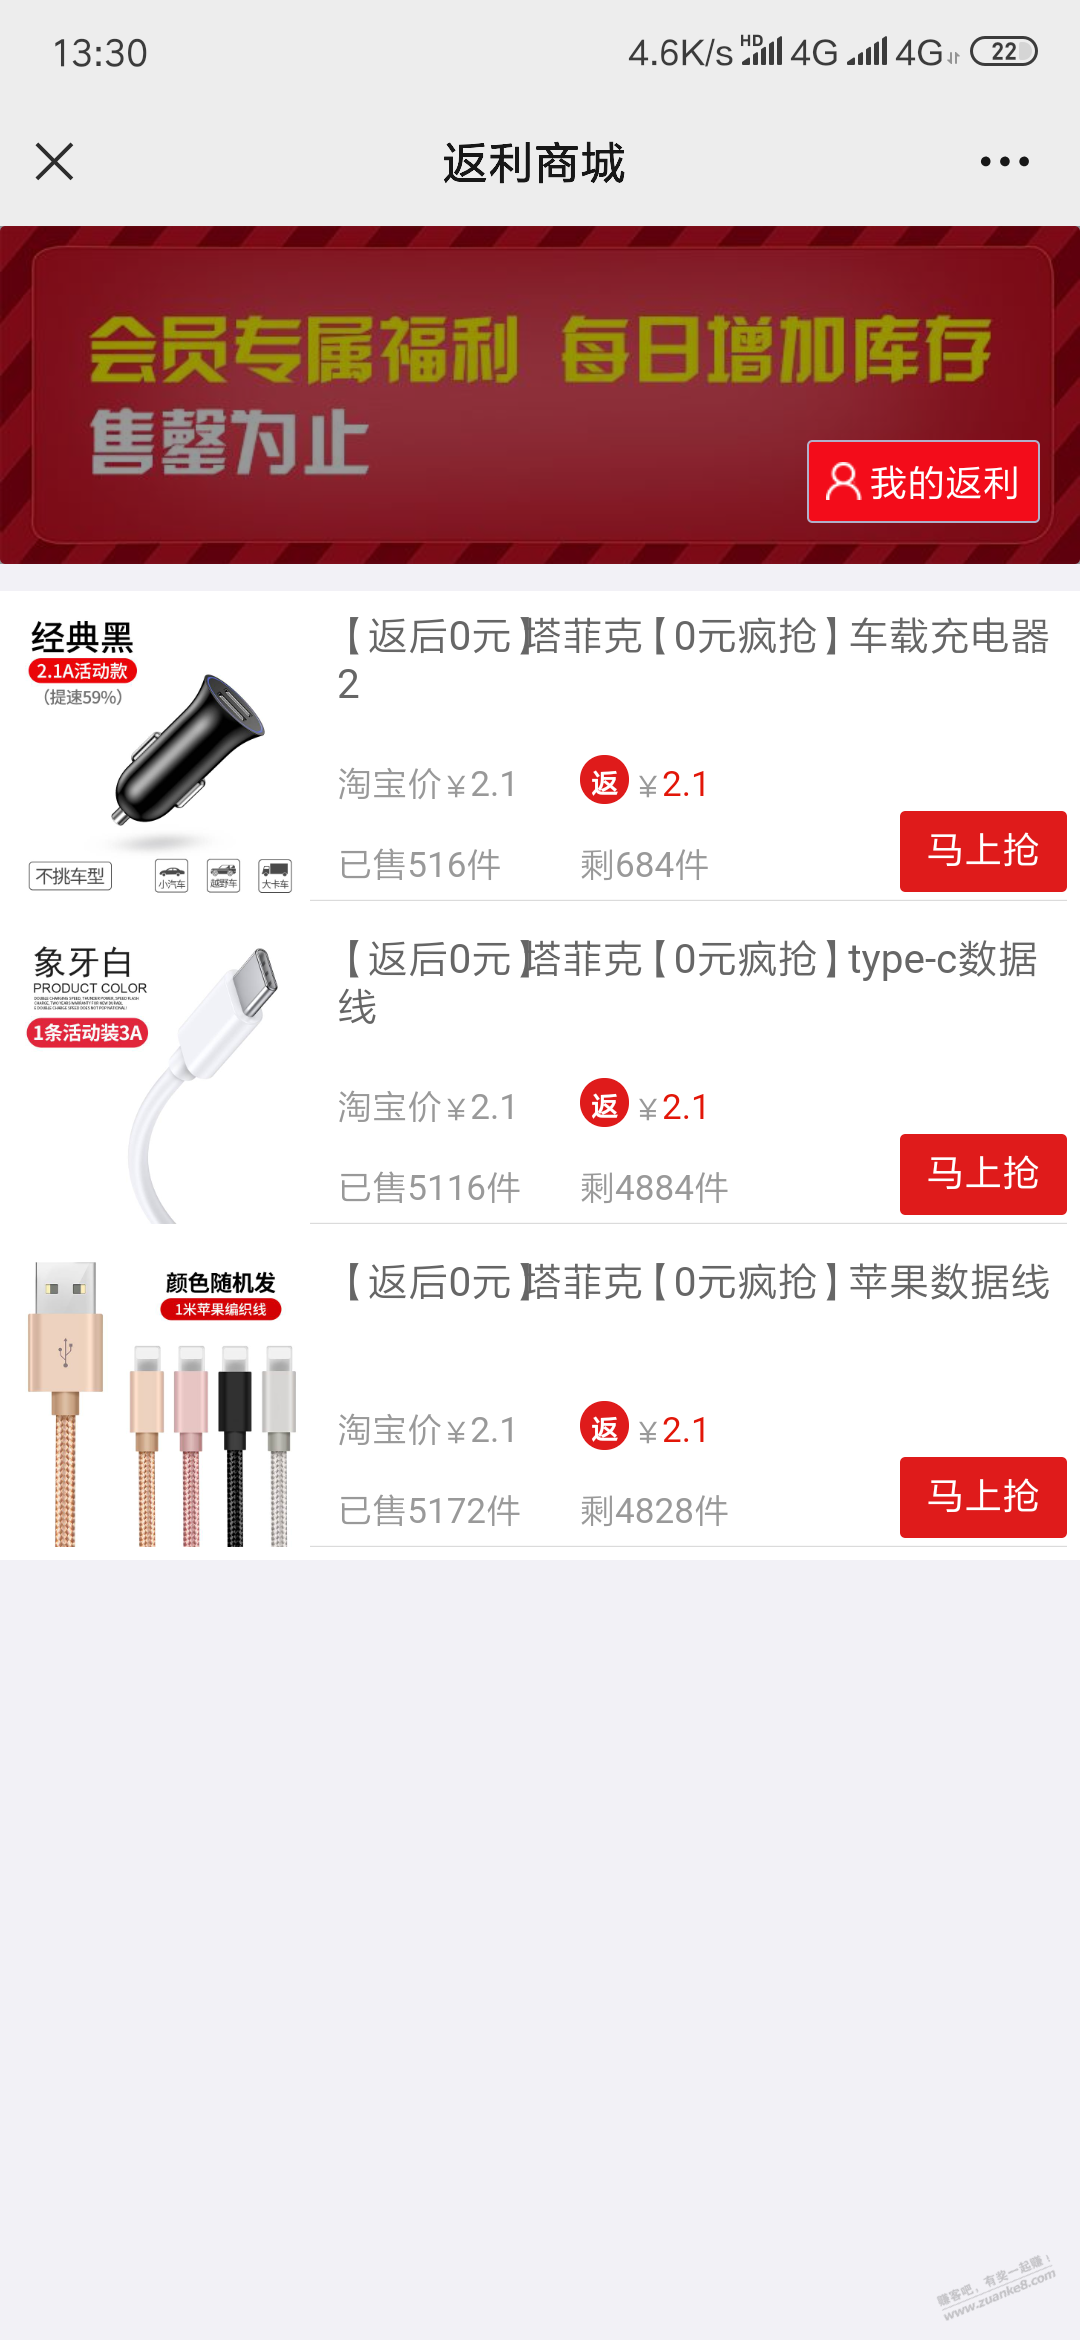 0元数据线-车载充电器-惠小助(52huixz.com)